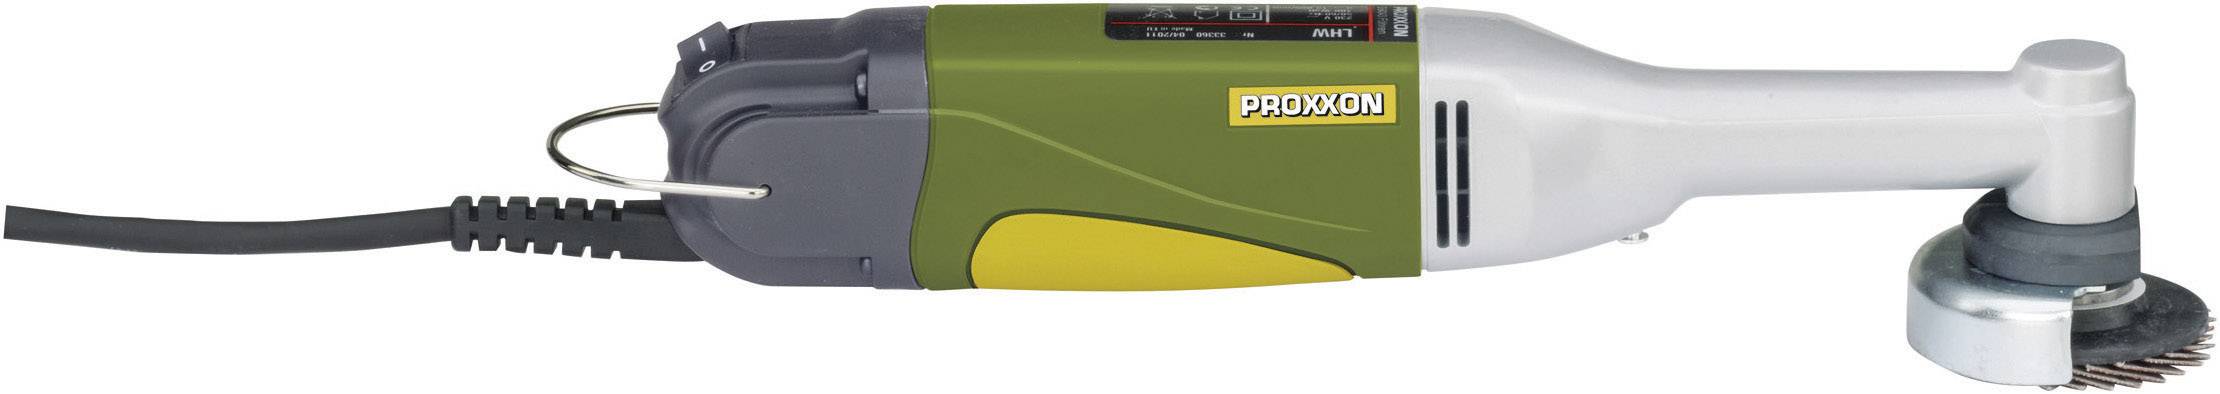 PROXXON Langhals-Winkelschleifer 50 mm inkl. Koffer 100 W Proxxon Micromot LHW 28 547